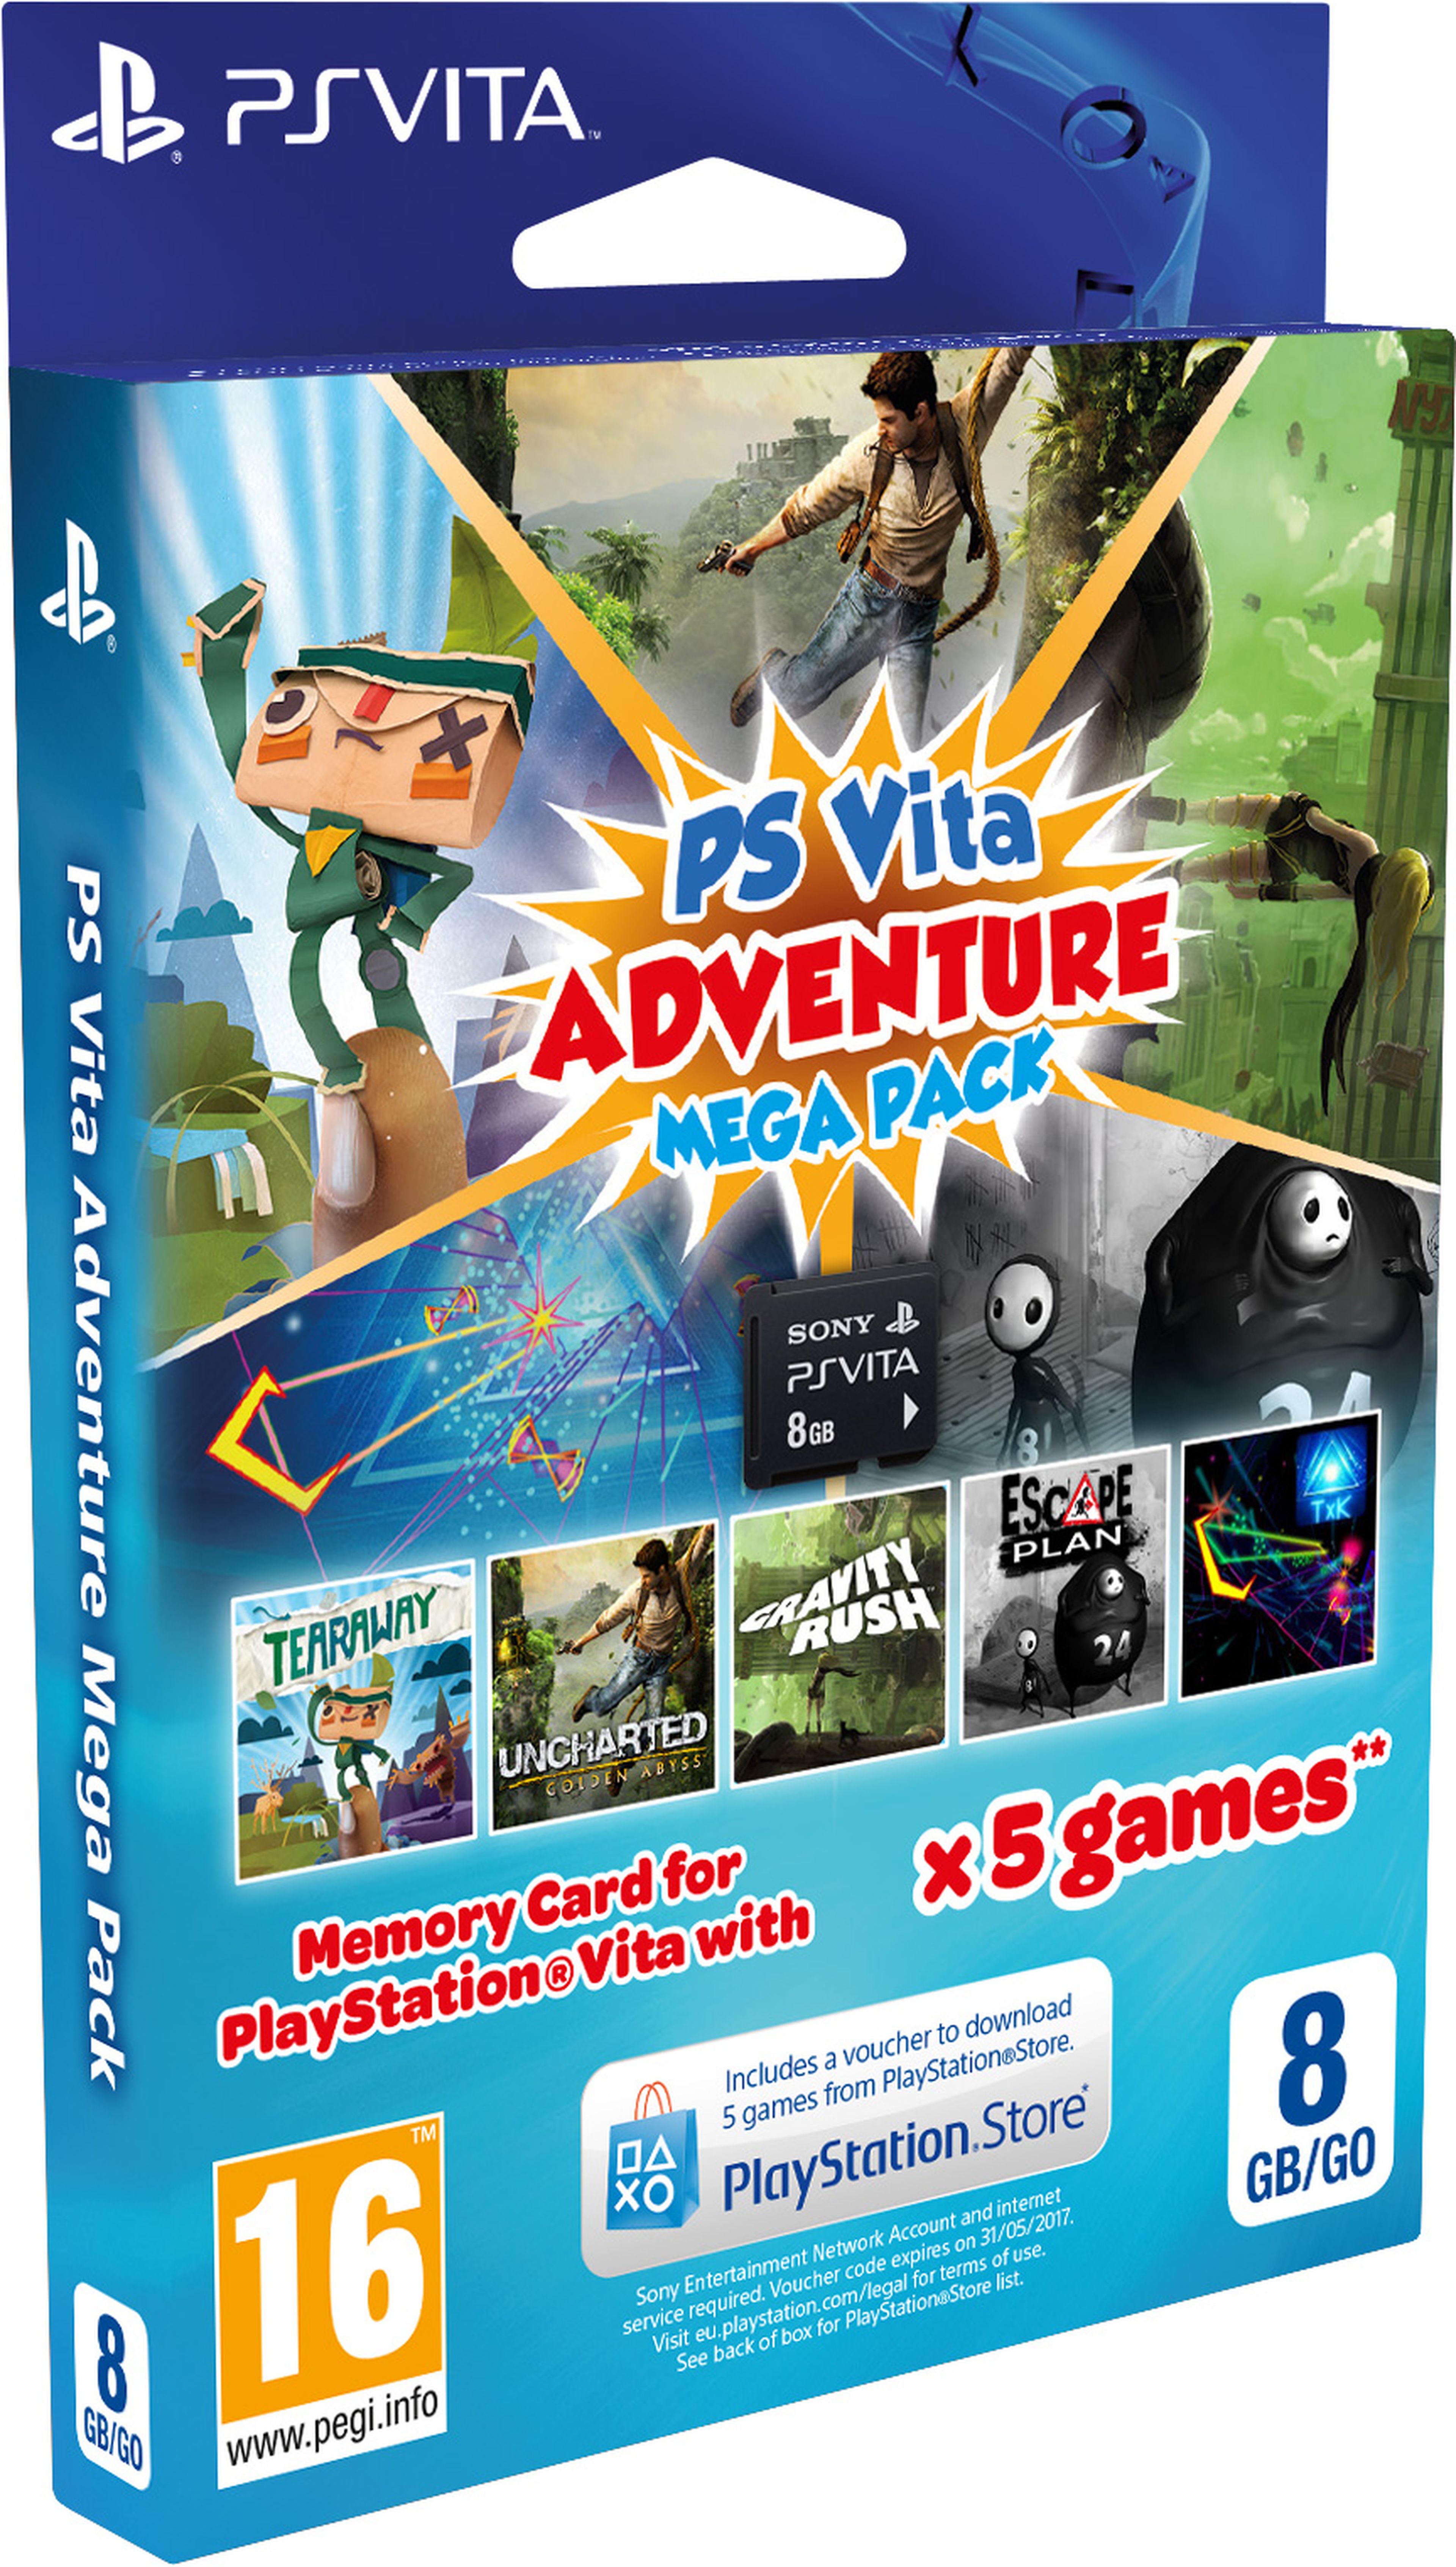 Nuevos Mega Pack para PS Vita